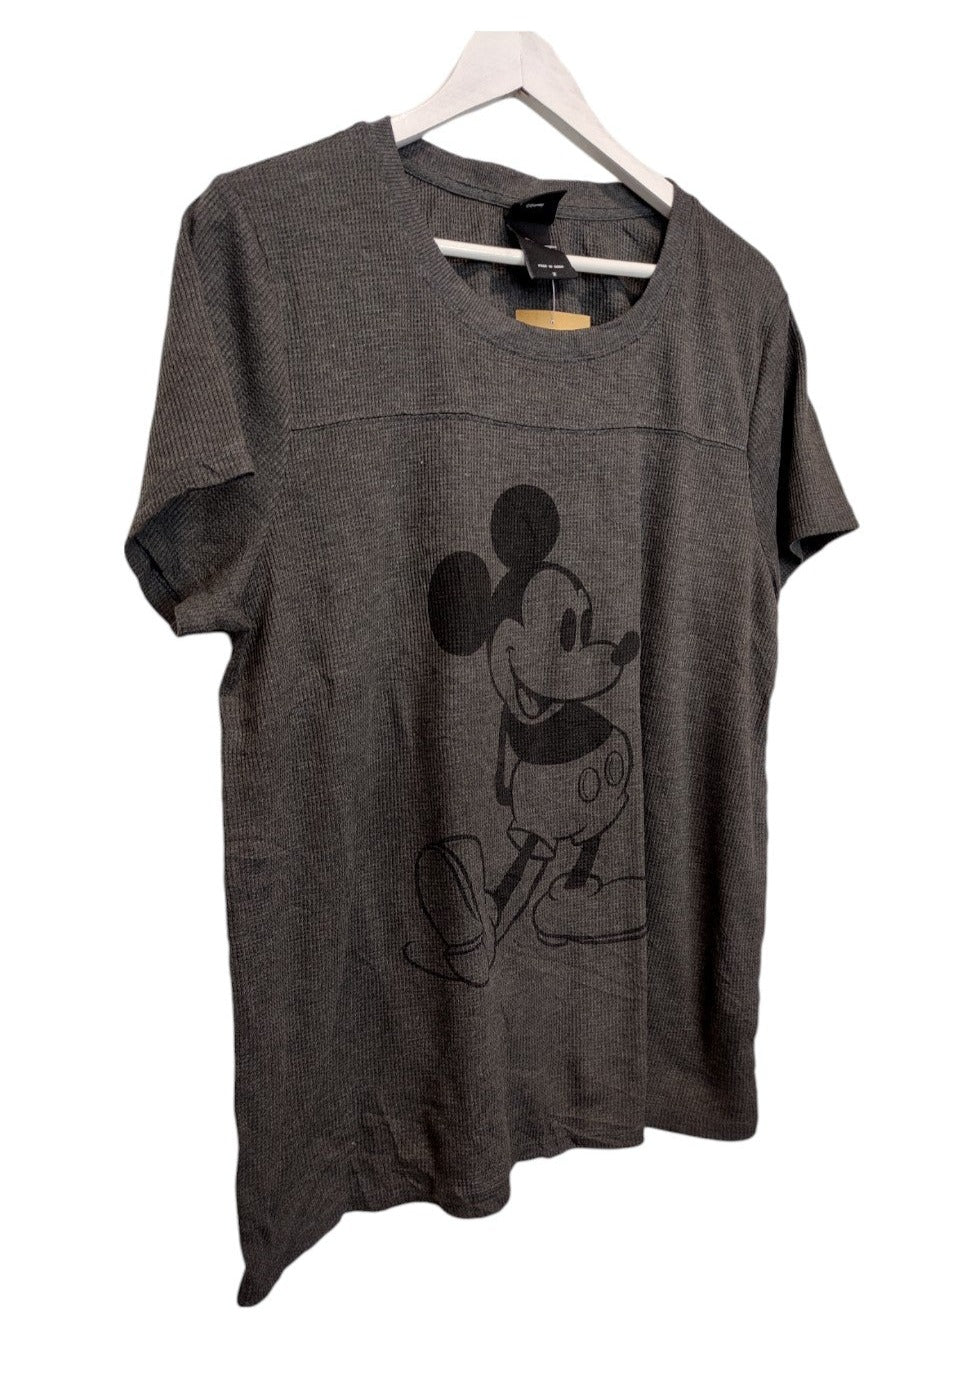 Γυναικεία, Κοντομάνικη Μπλούζα - T-Shirt MICKEY MOUSE DISNEY σε Σκούρο Γκρι χρώμα (Large)